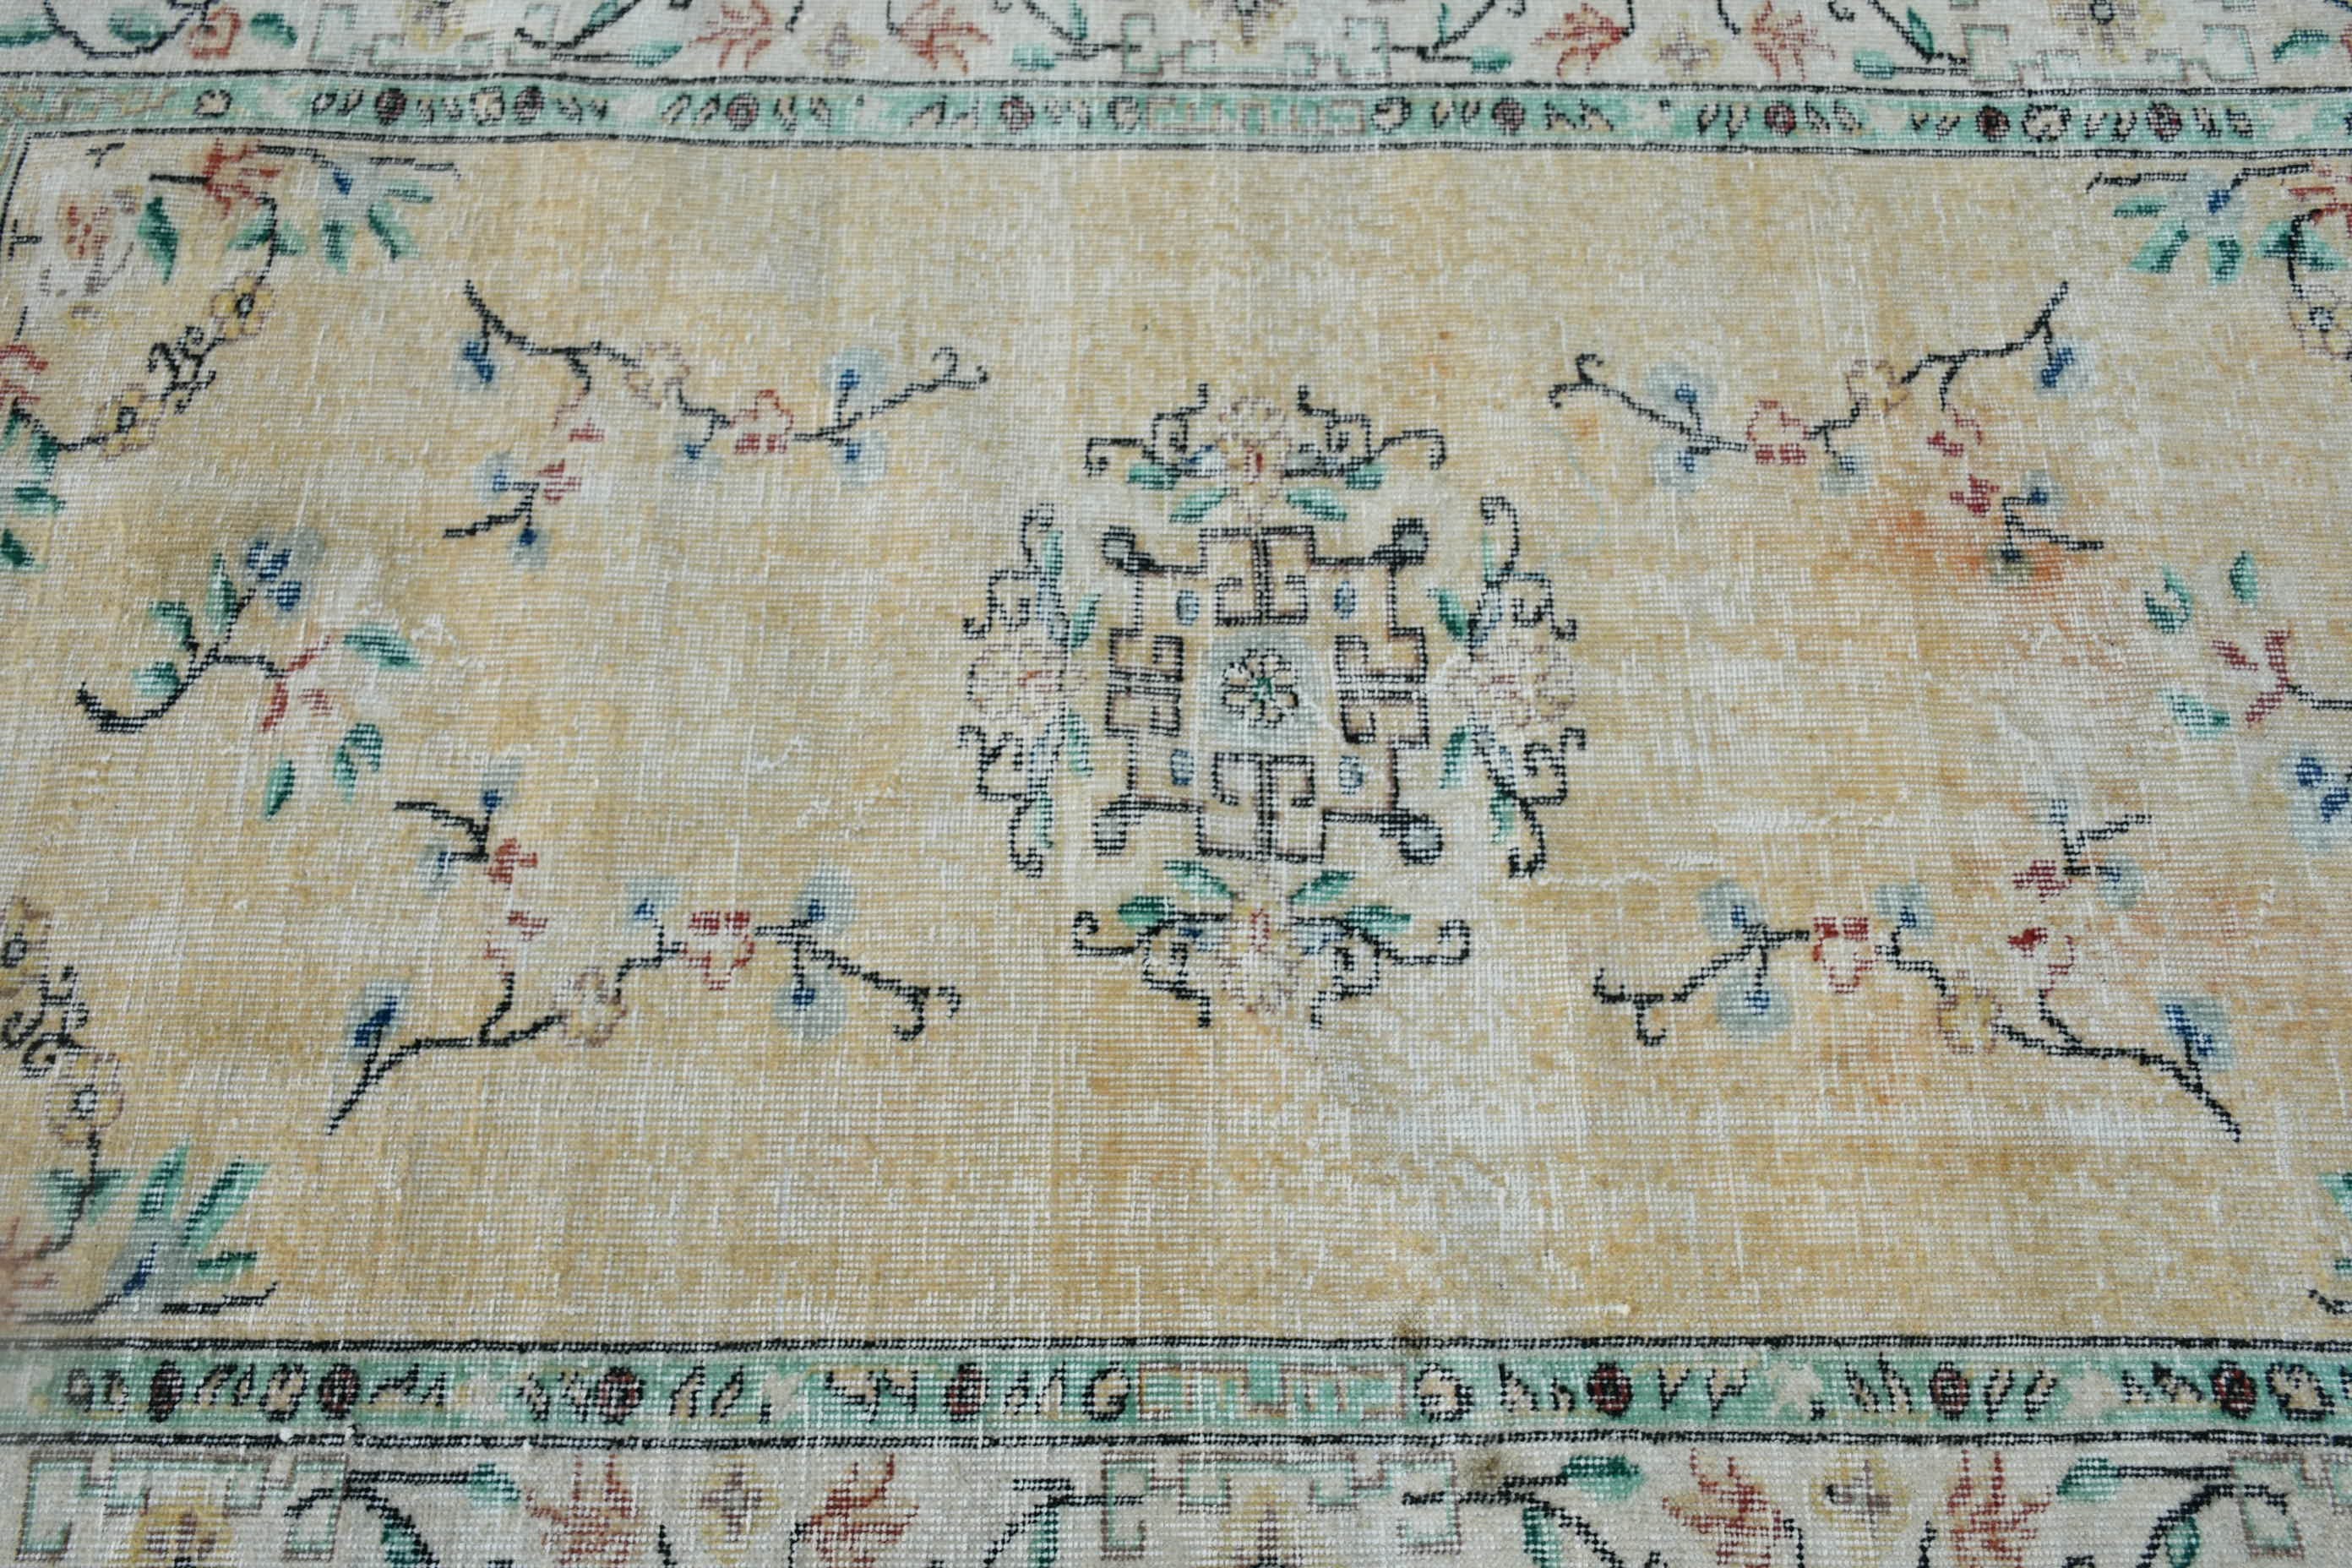 Turkey Rug, Floor Rugs, Vintage Rug, Beige Antique Rug, Oriental Rug, Rugs for Bedroom, Dining Room Rugs, Turkish Rugs, 3.8x6.5 ft Area Rug